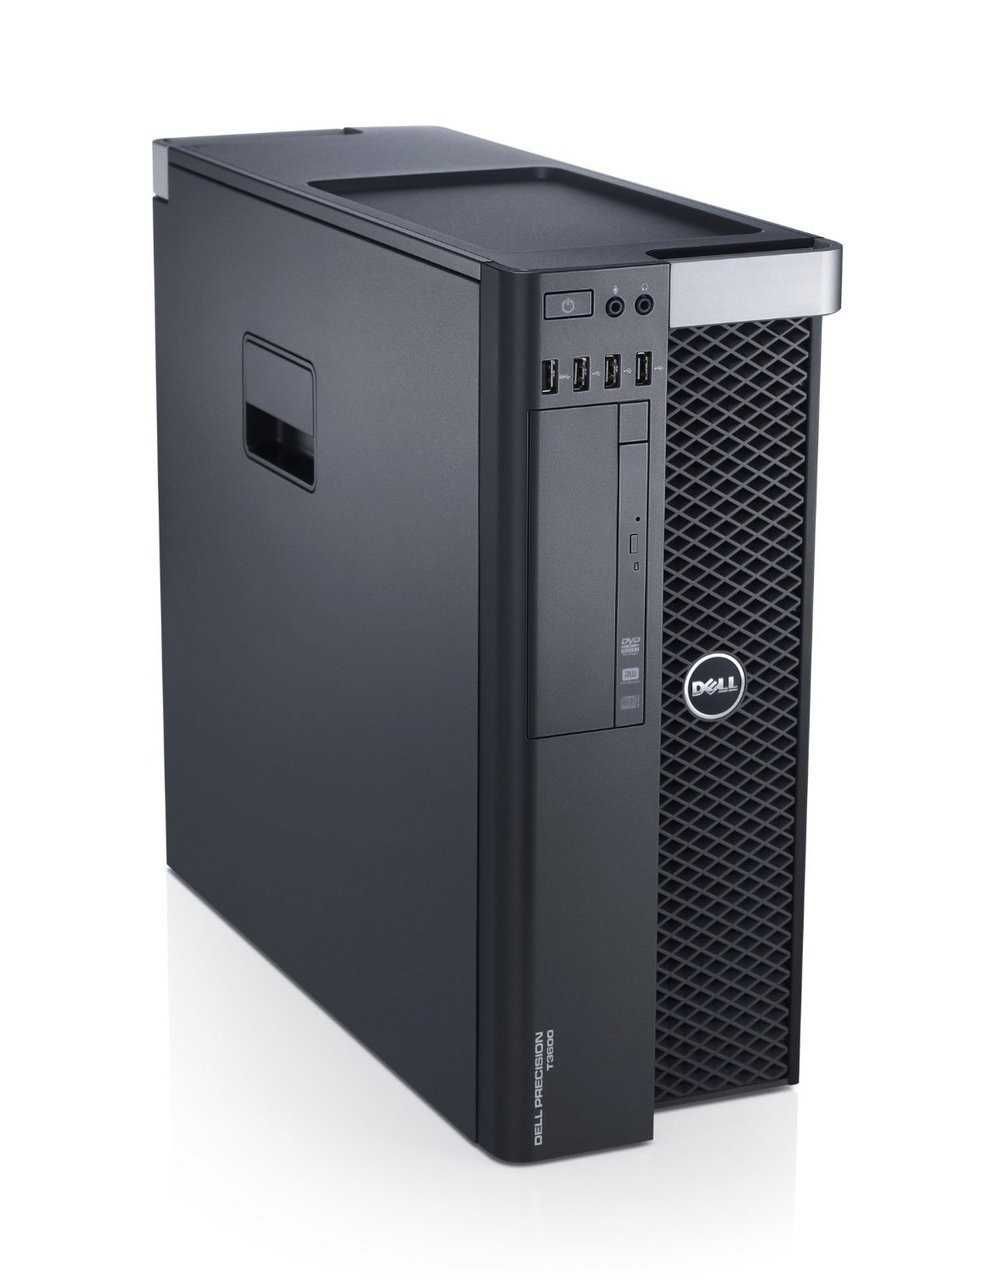 Dell Precison T3610 Workstation Tower Octa E5-2670 16-32GB 500GB K4000